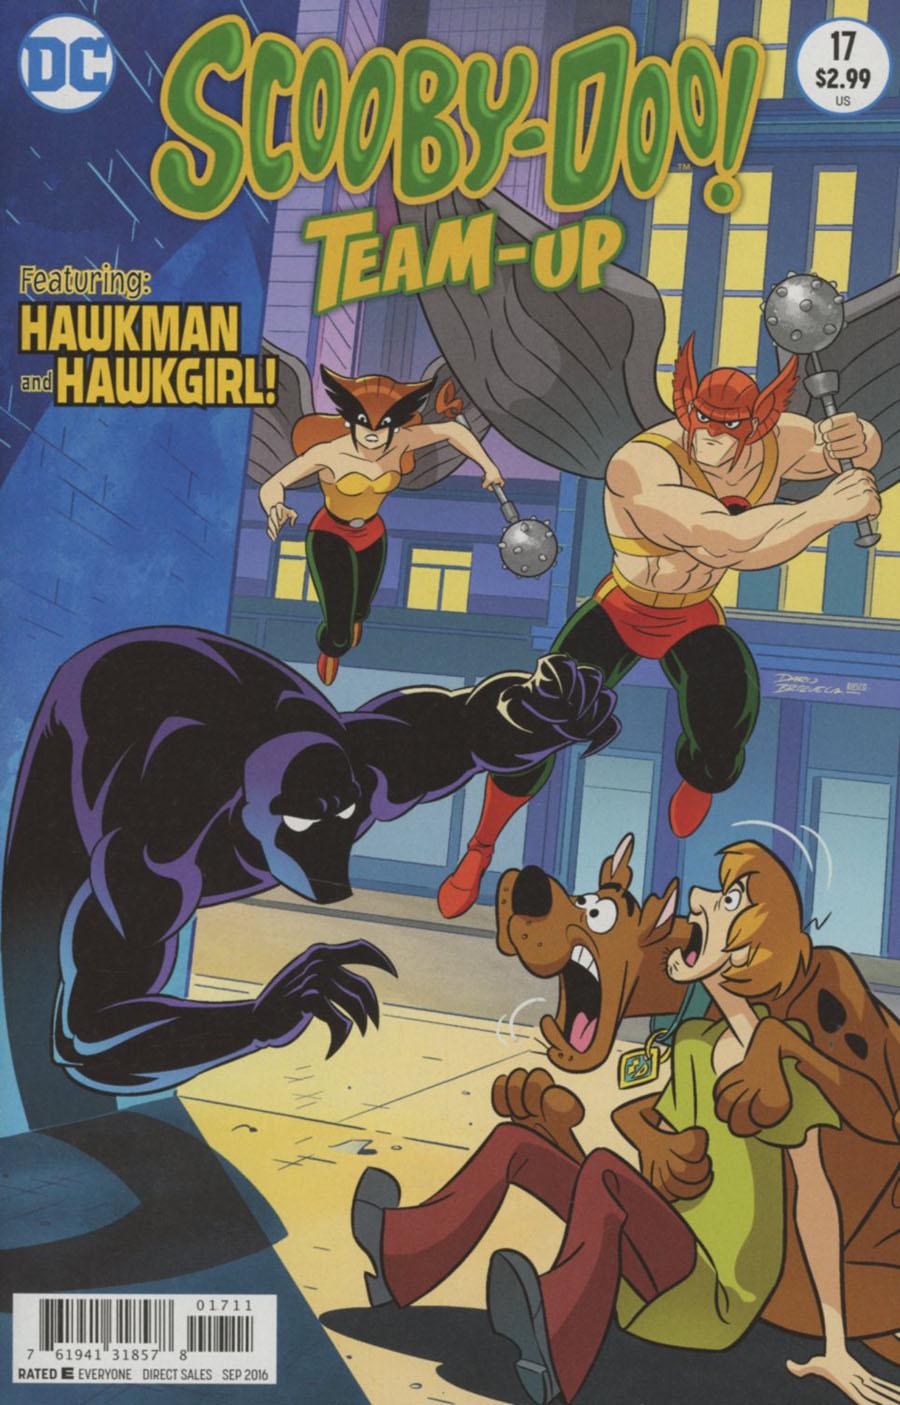 Scooby-Doo Team-Up Vol. 1 #17